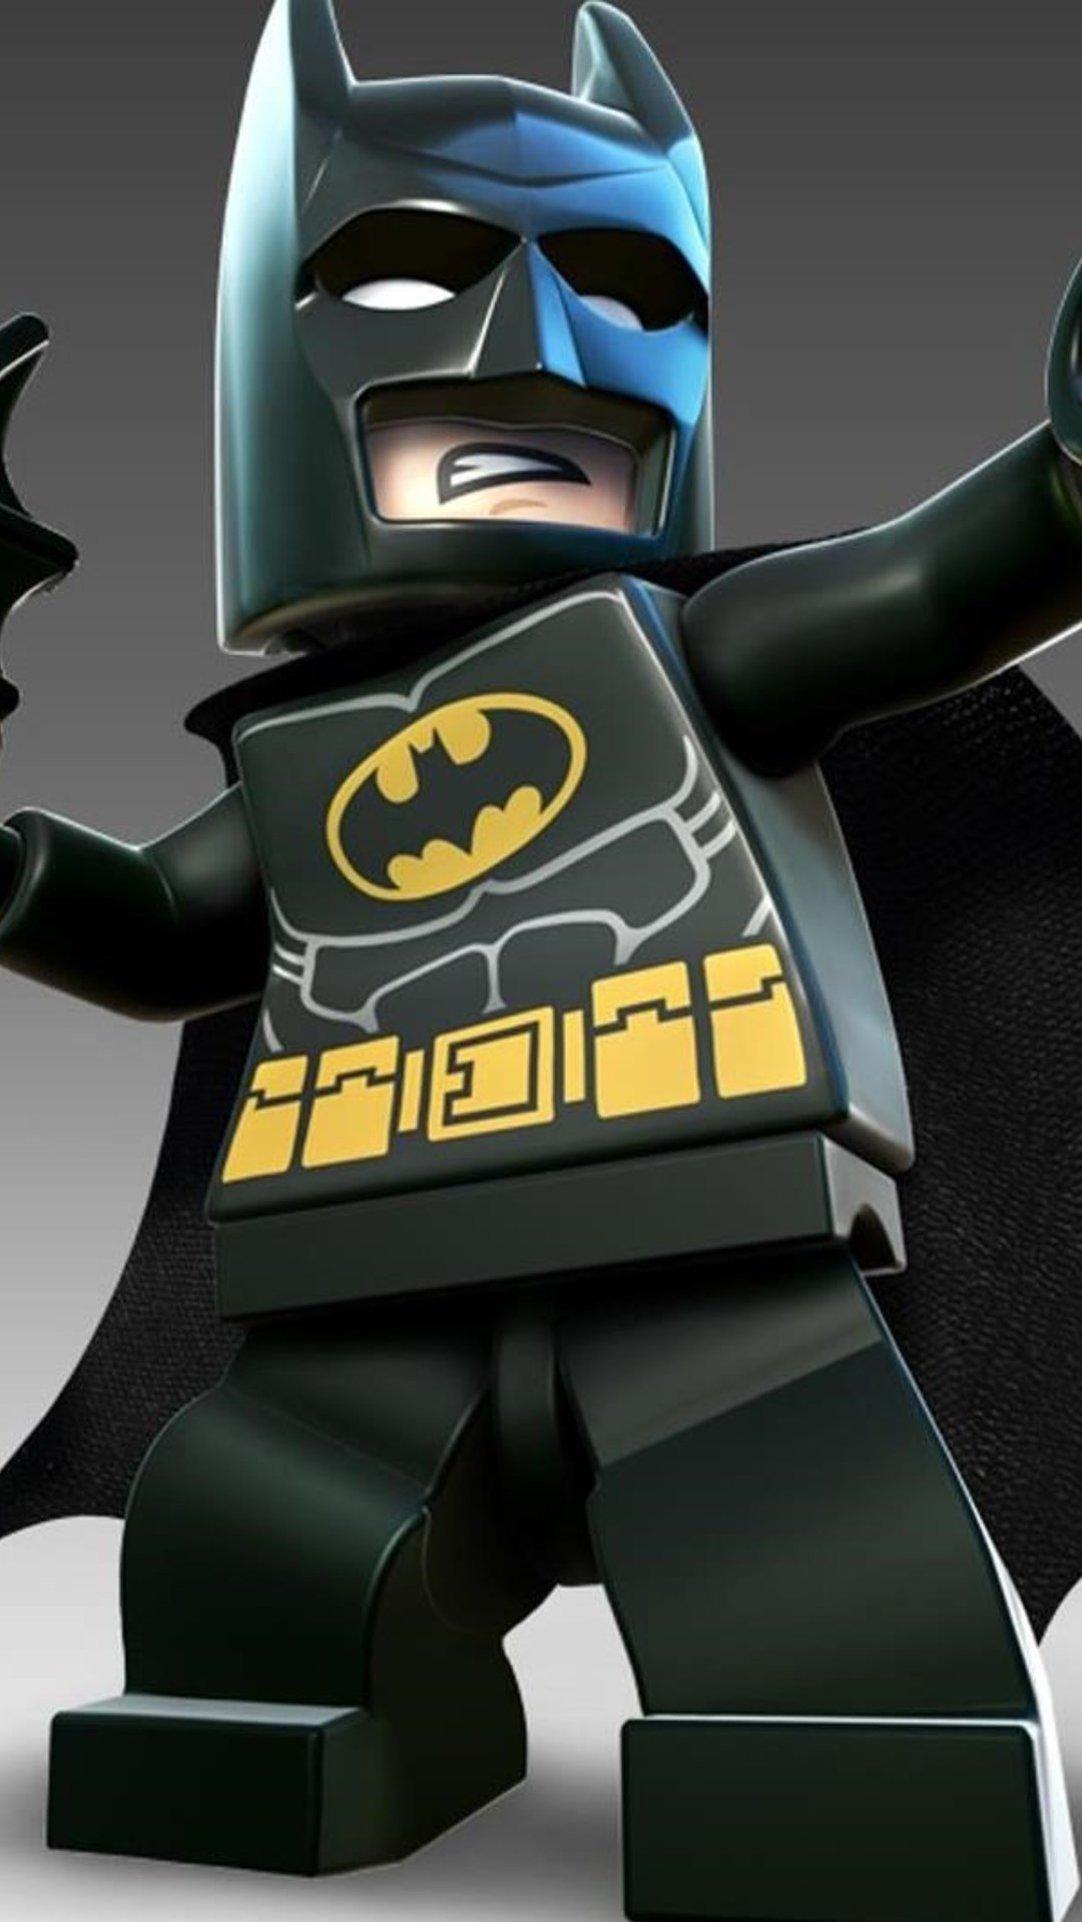 Batman Lego Wallpaper ID on Cartoons Wallpaper